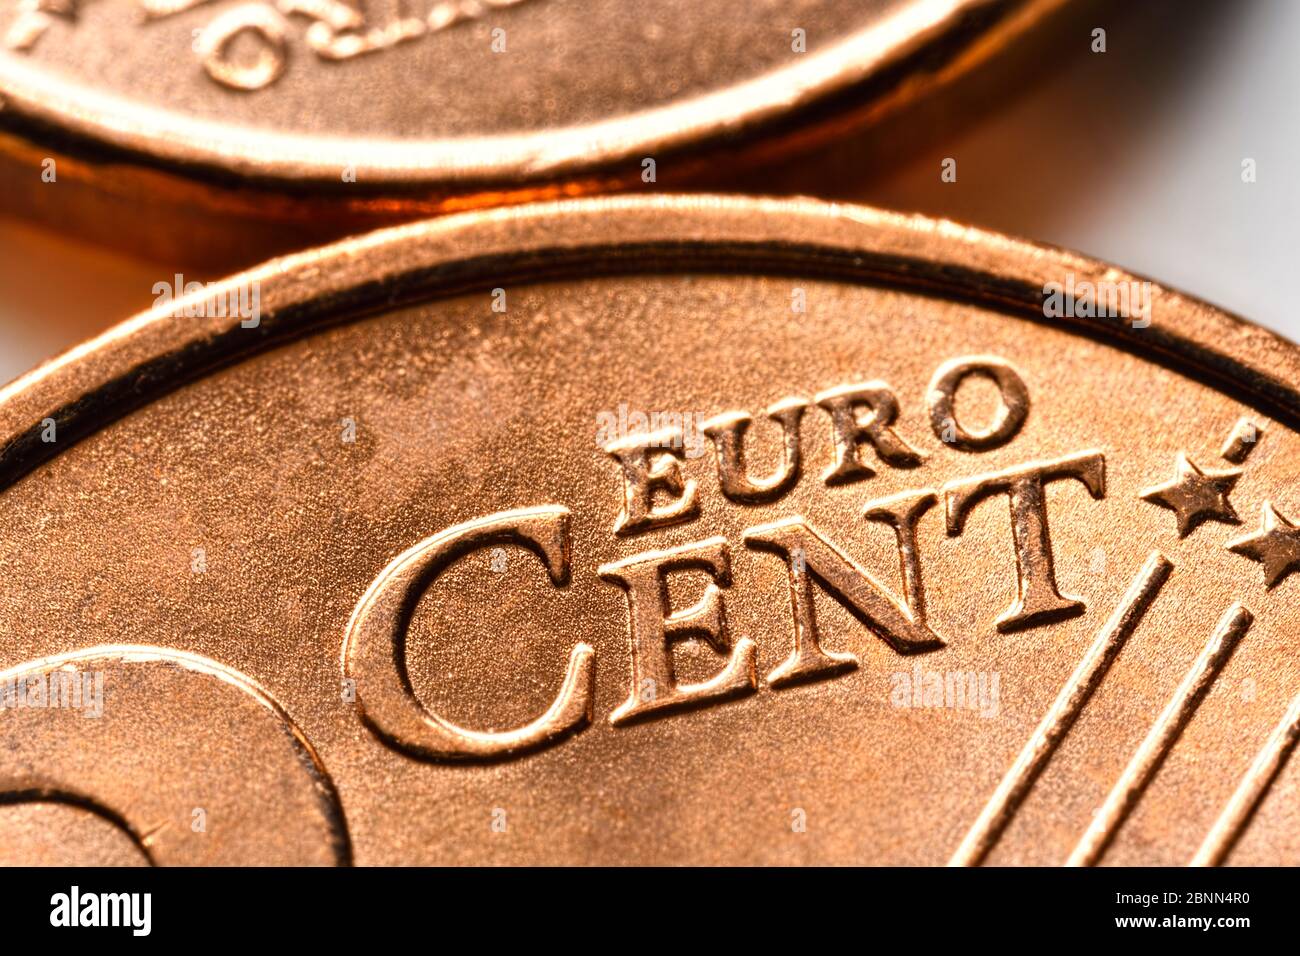 Primo piano di monete centesimi, foto simbolica per la prevista abolizione di monete da 1 e 2 cent Foto Stock